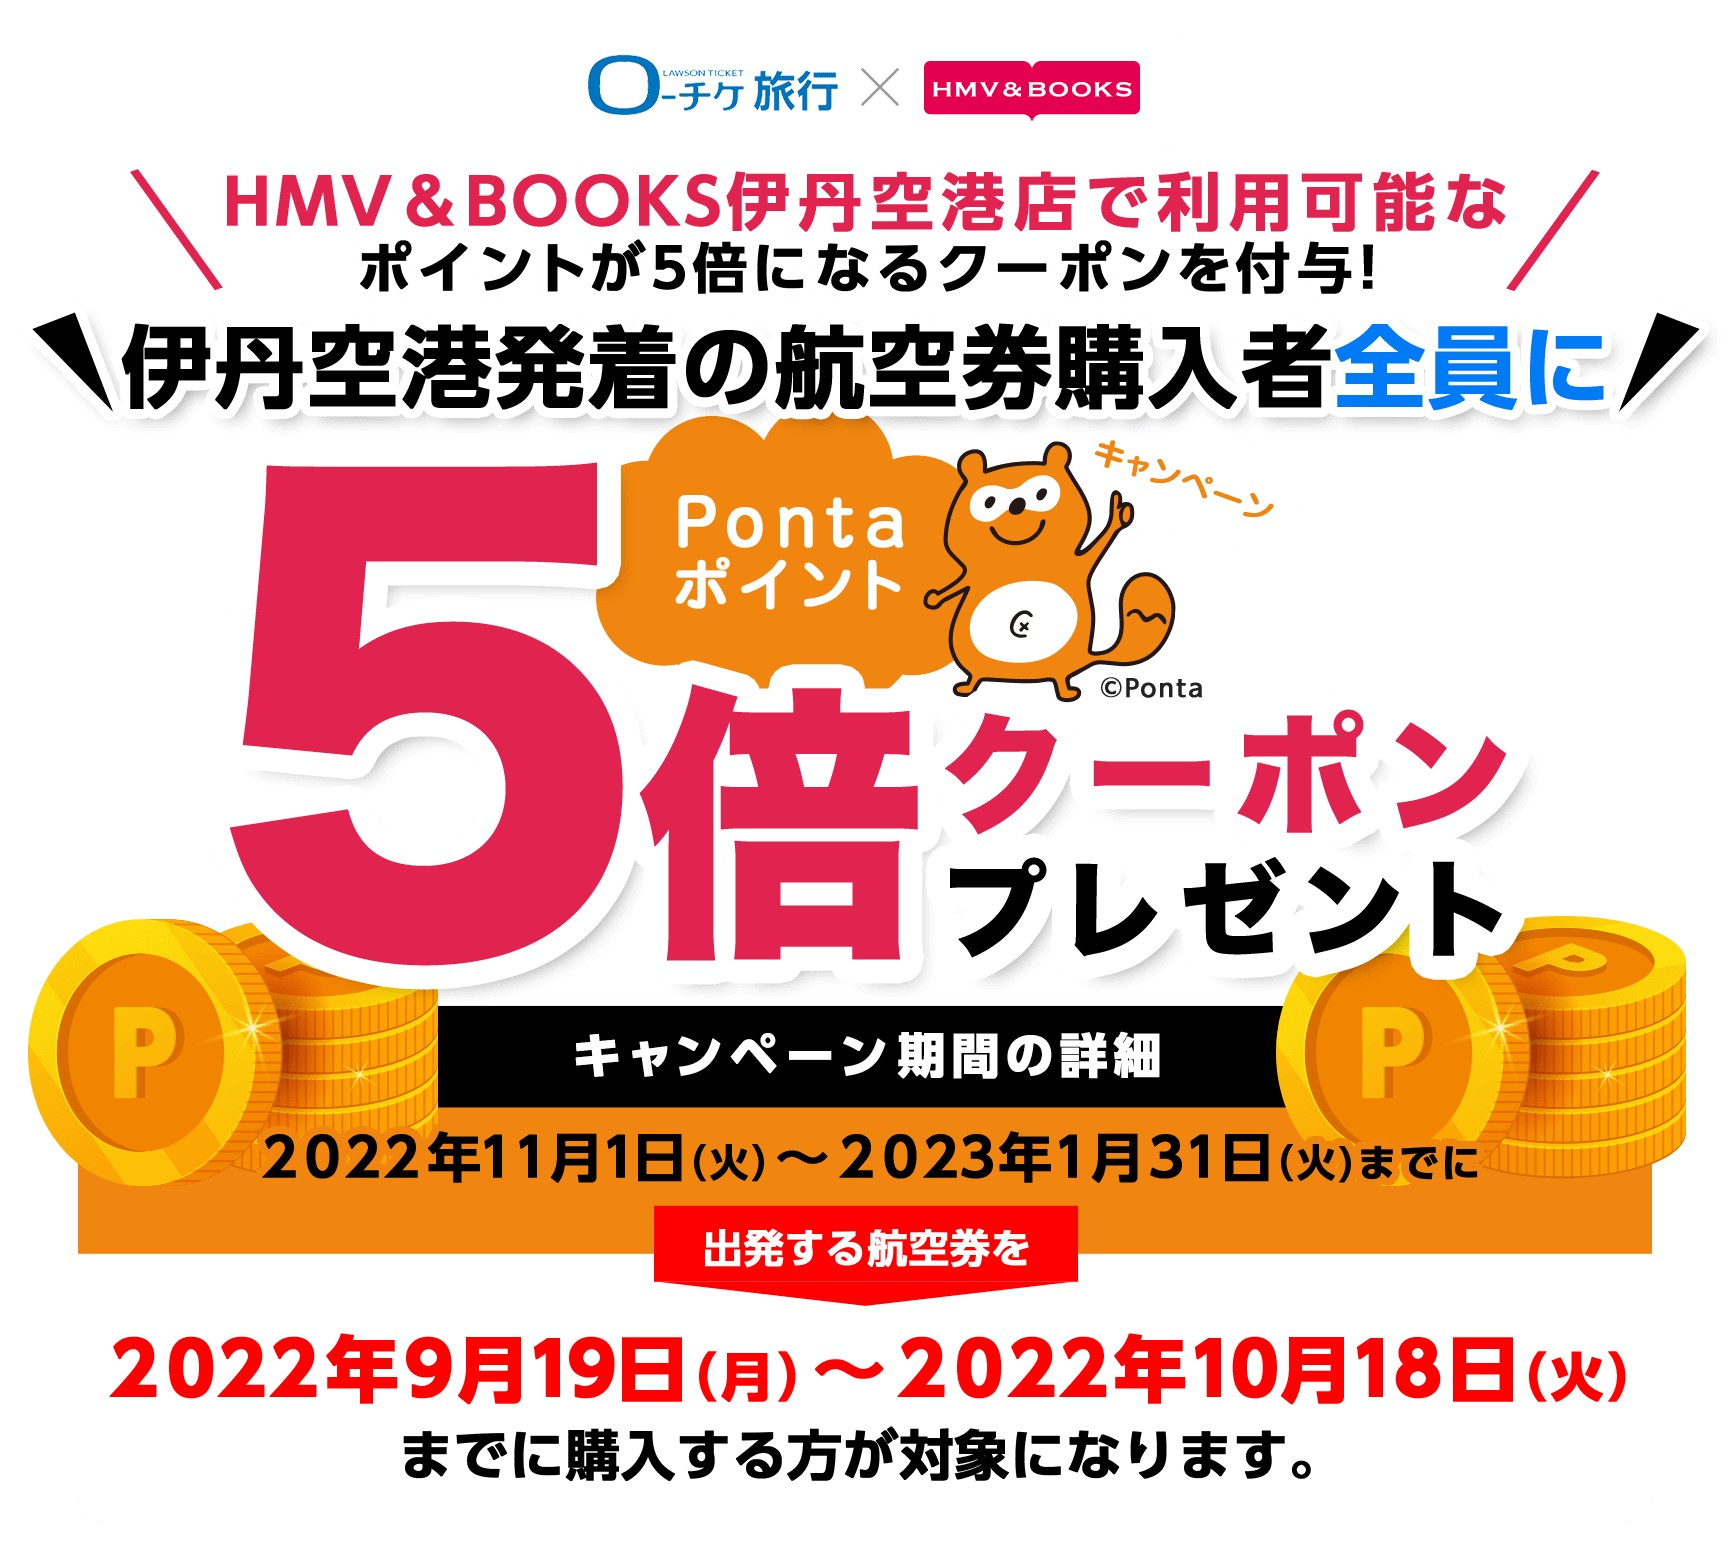 ローチケ旅行 HMV&BOOKS伊丹空港店で使えるPontaポイント5倍クーポンプレゼントキャンペーン